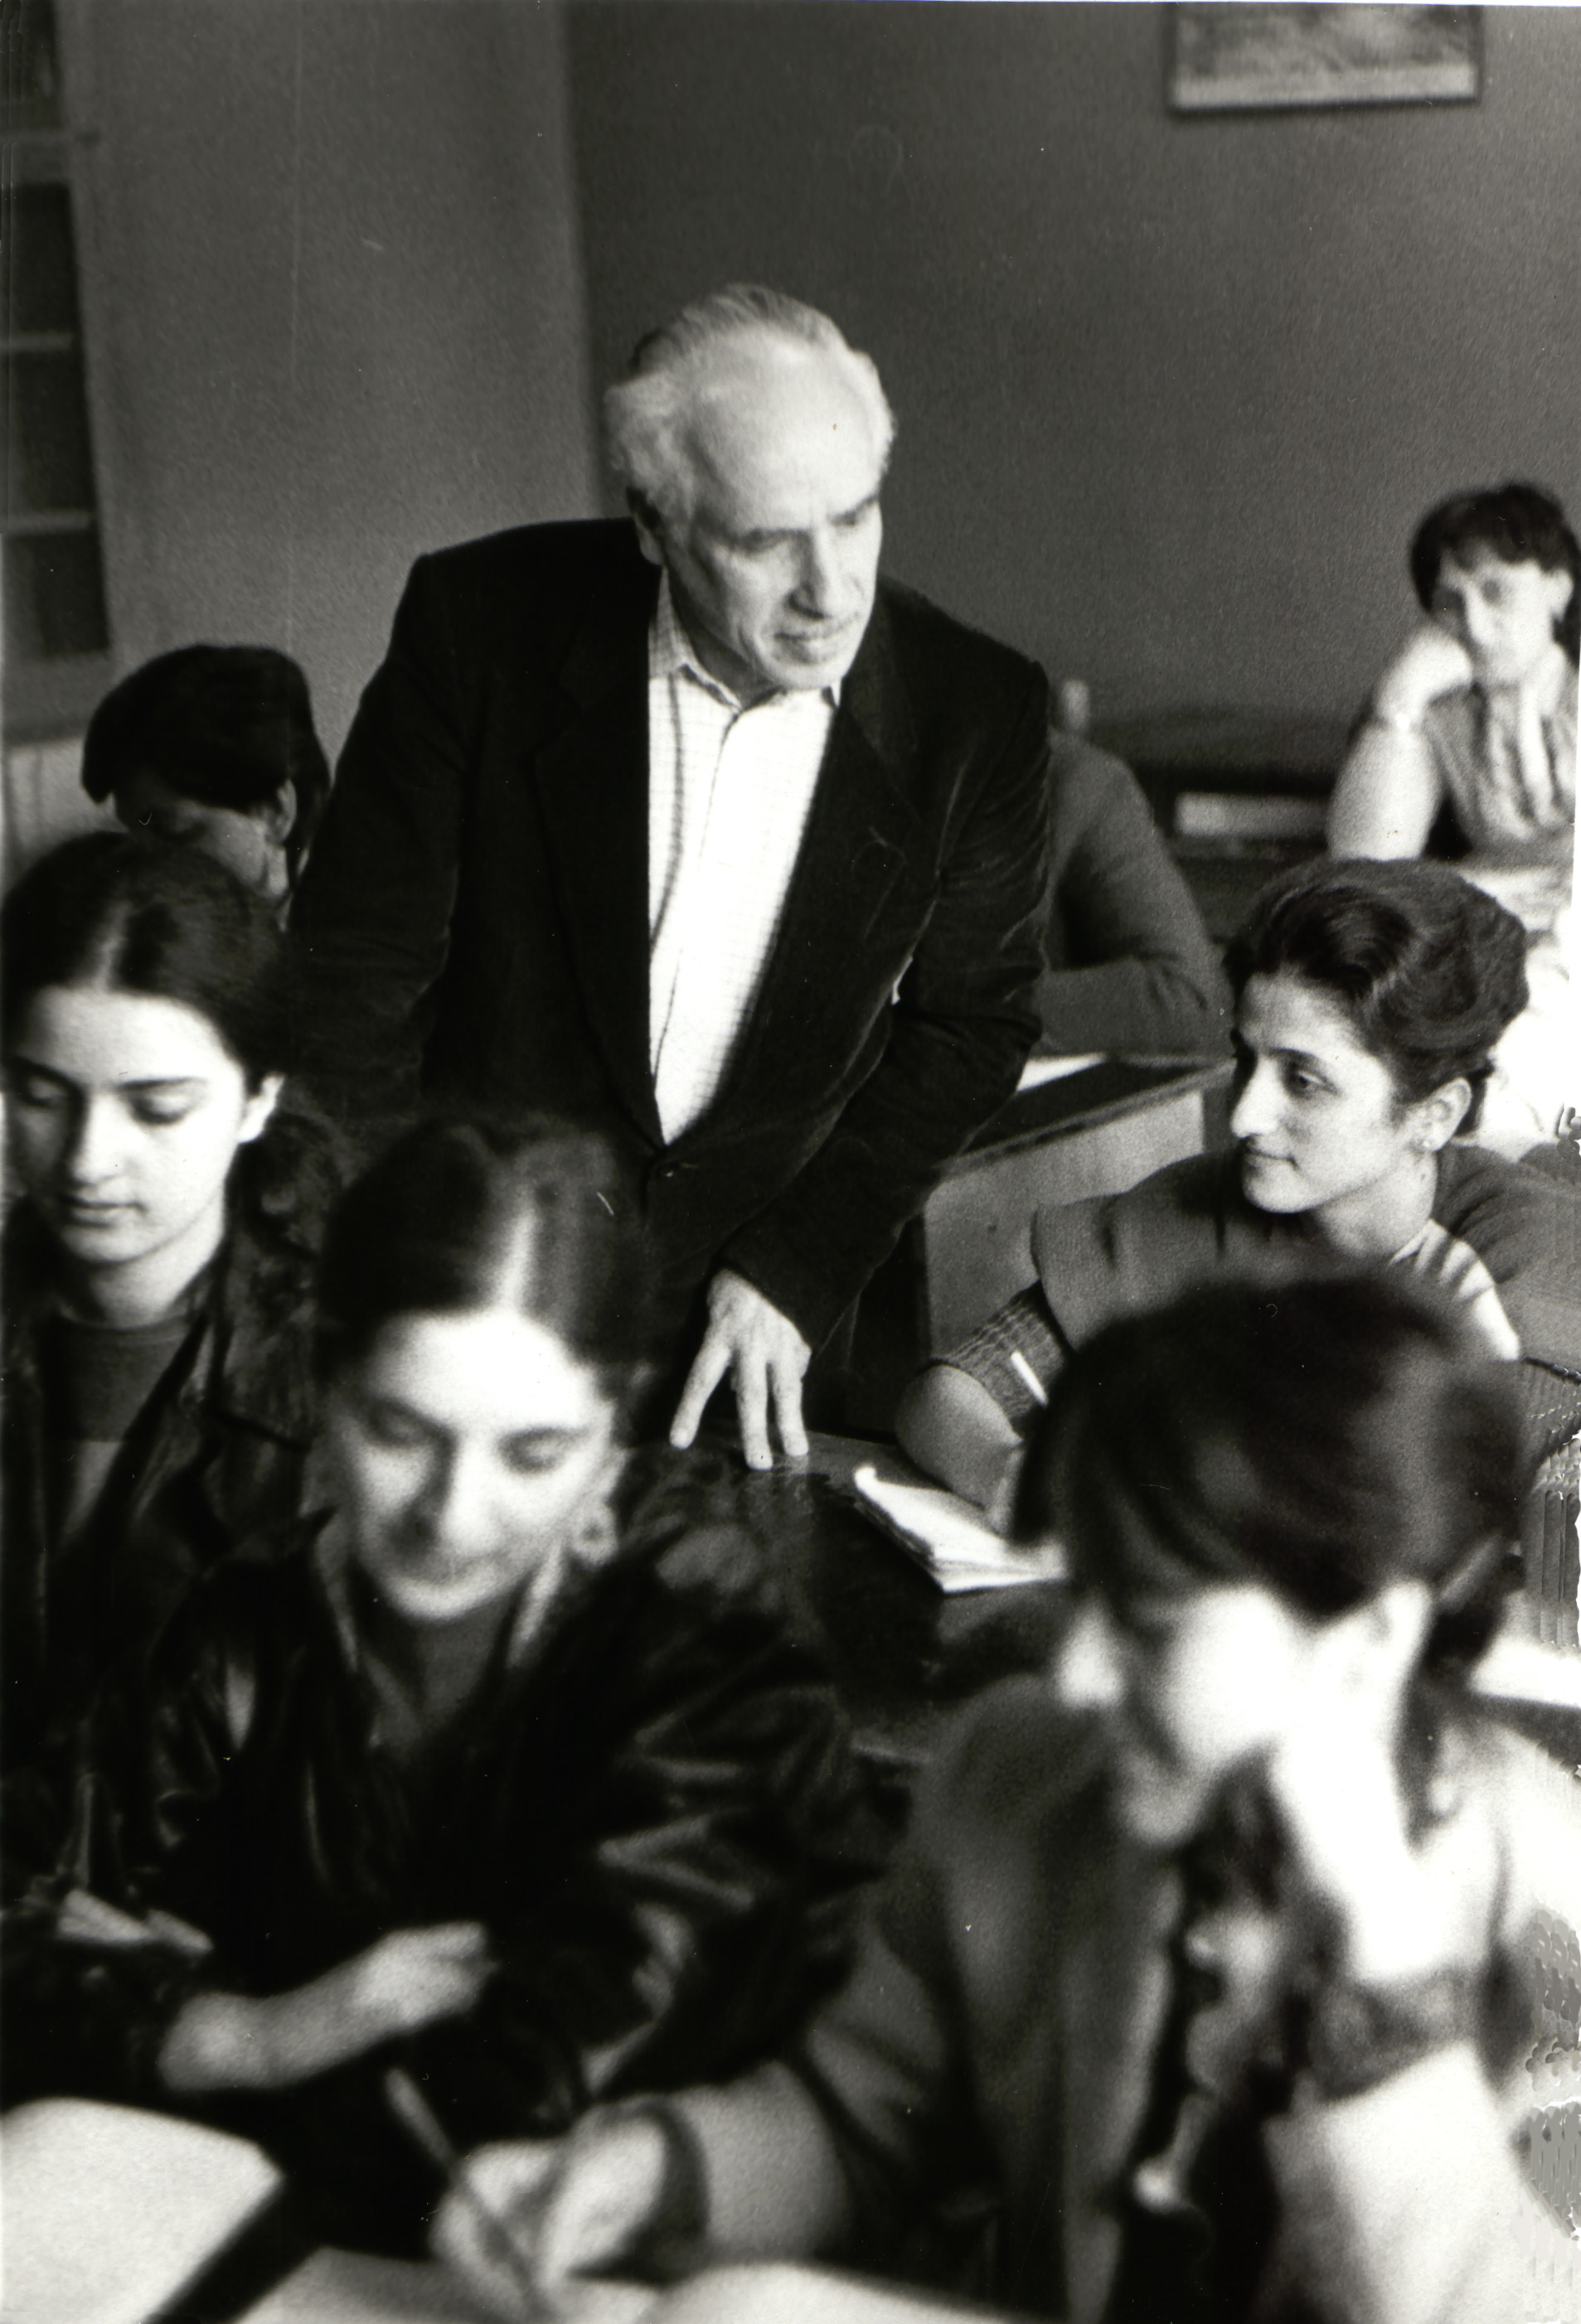 Грузия, на лекции со студентами, 1980-е годы